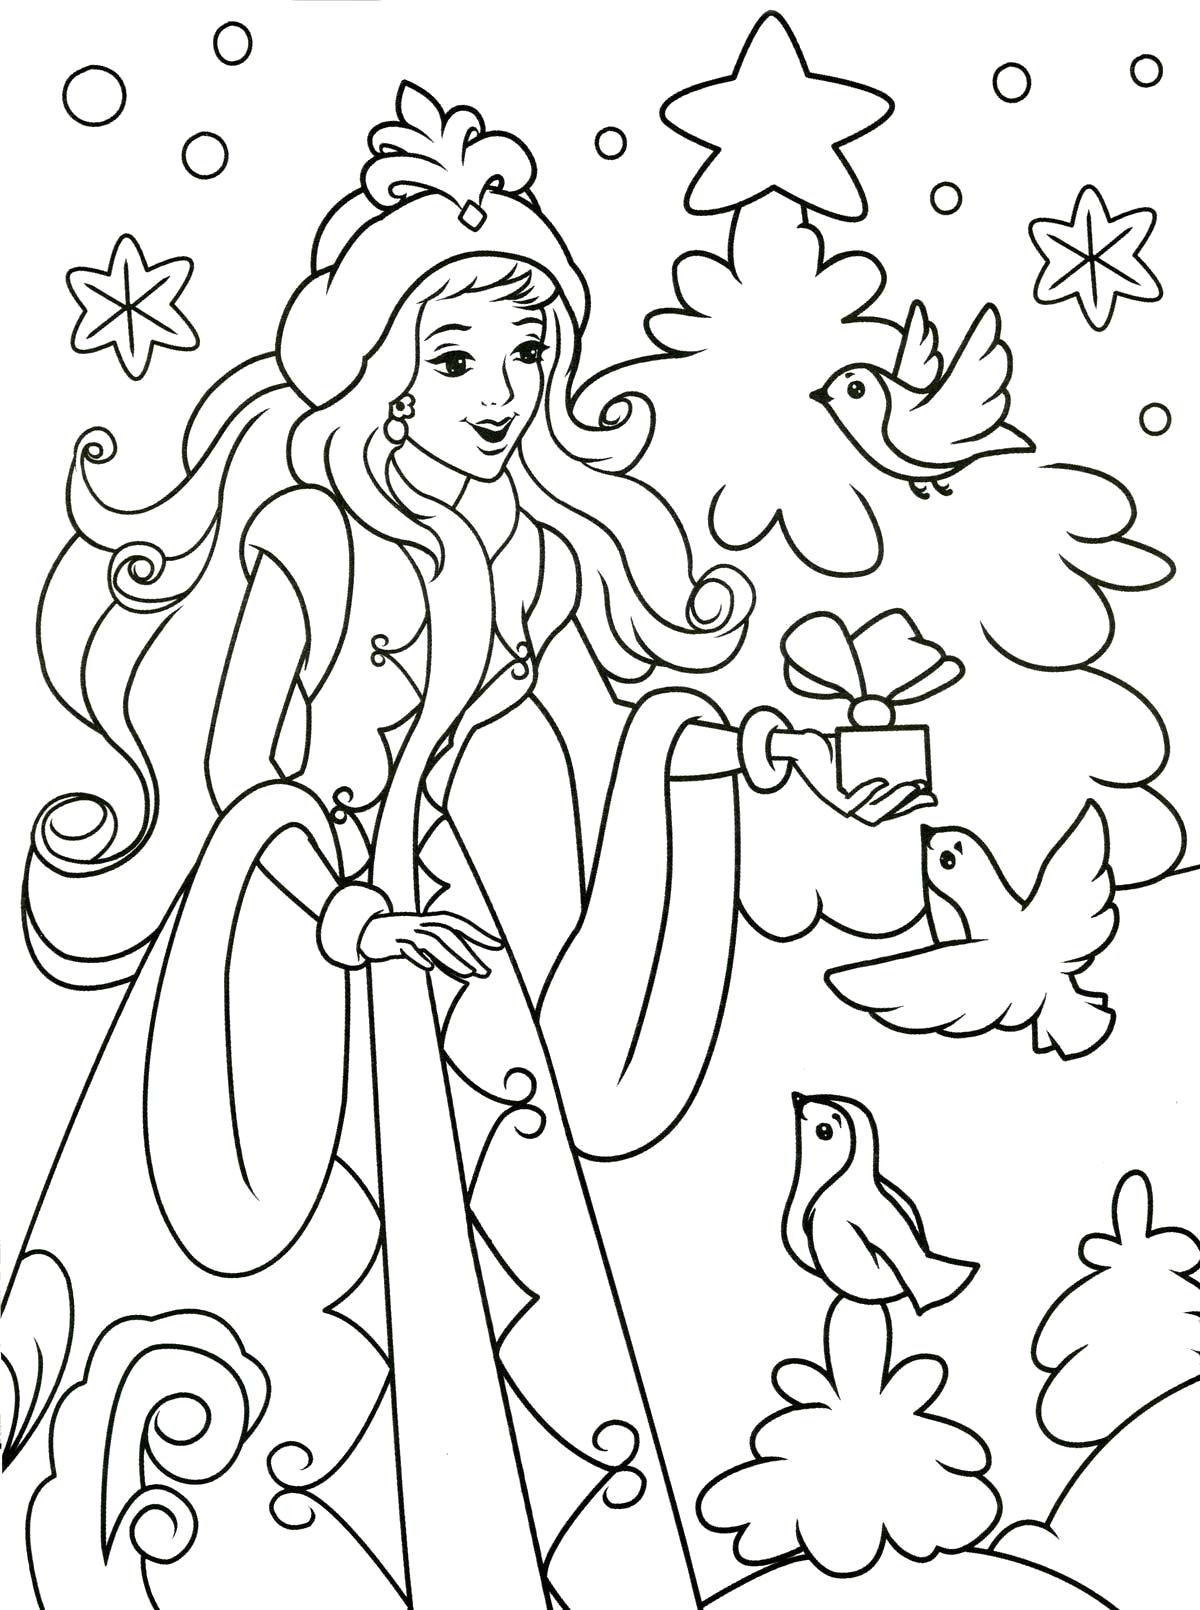 Разукрашка Снегурочка / Снегурочка рисунок раскраска – юная помощница и символ Нового года